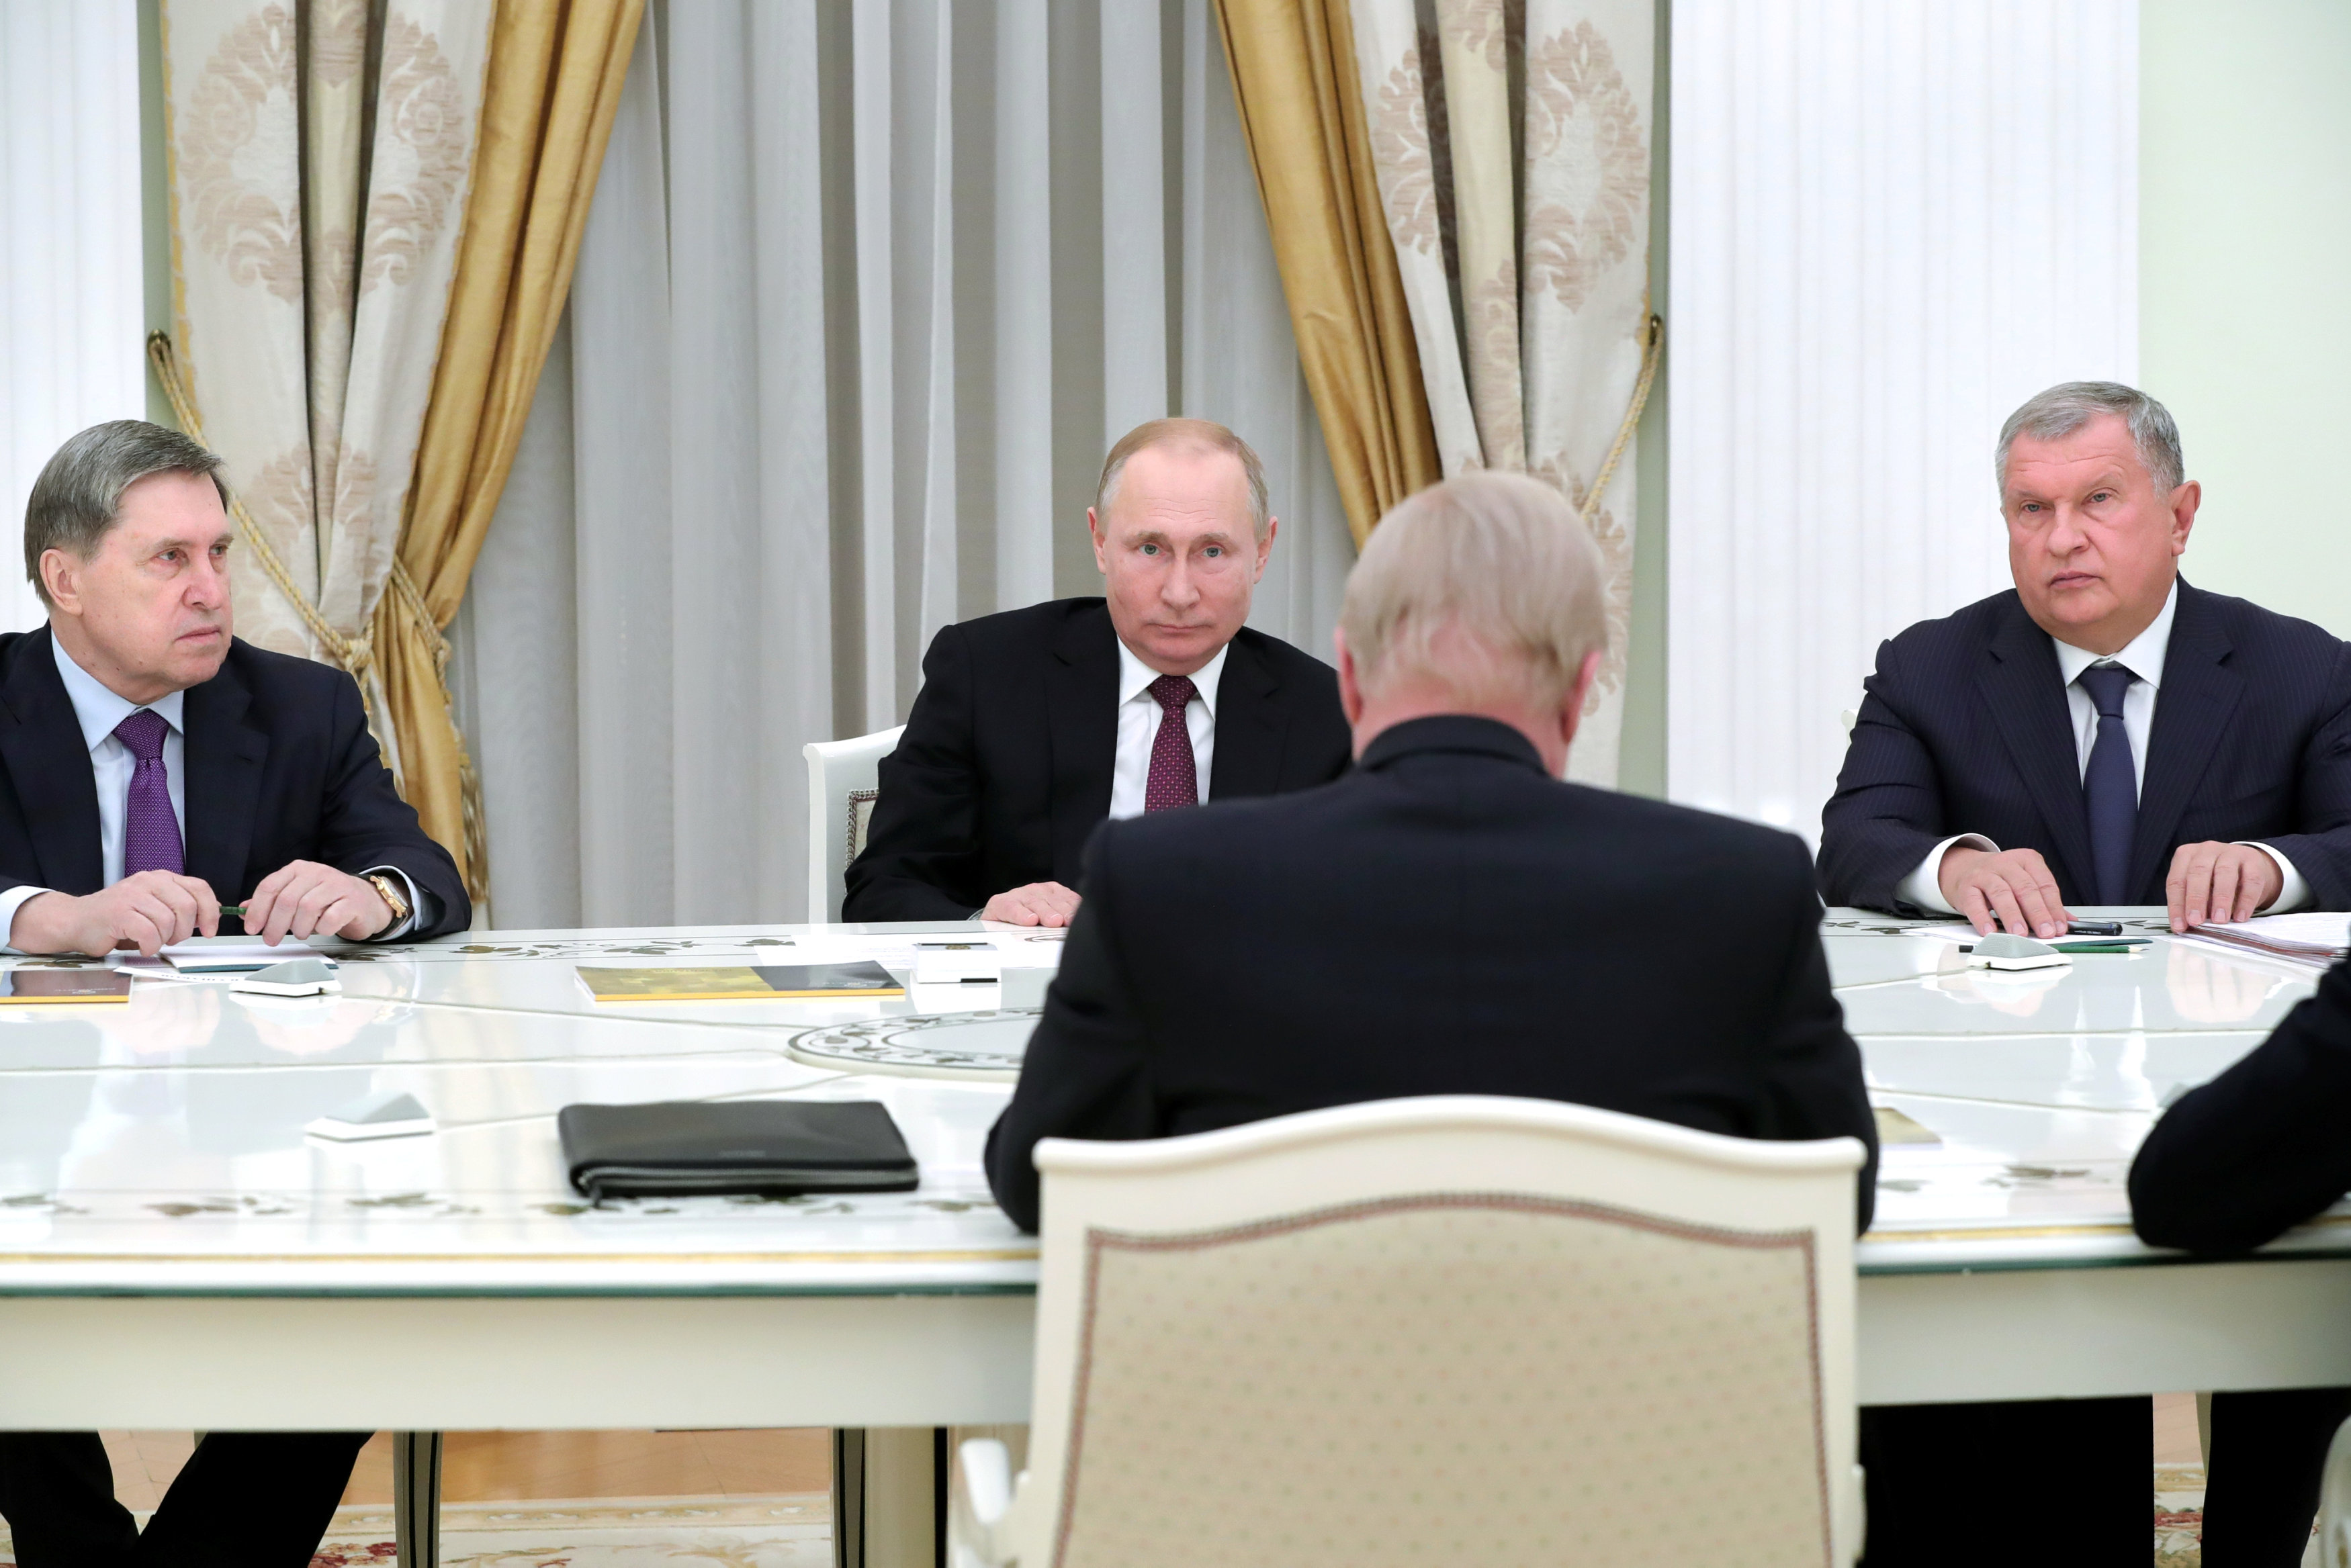 Yuri Ushakov, a la derecha de Putin durante una reunión en el Kremlin (Sputnik/Mikhail Klimentyev/Kremlin via REUTERS)